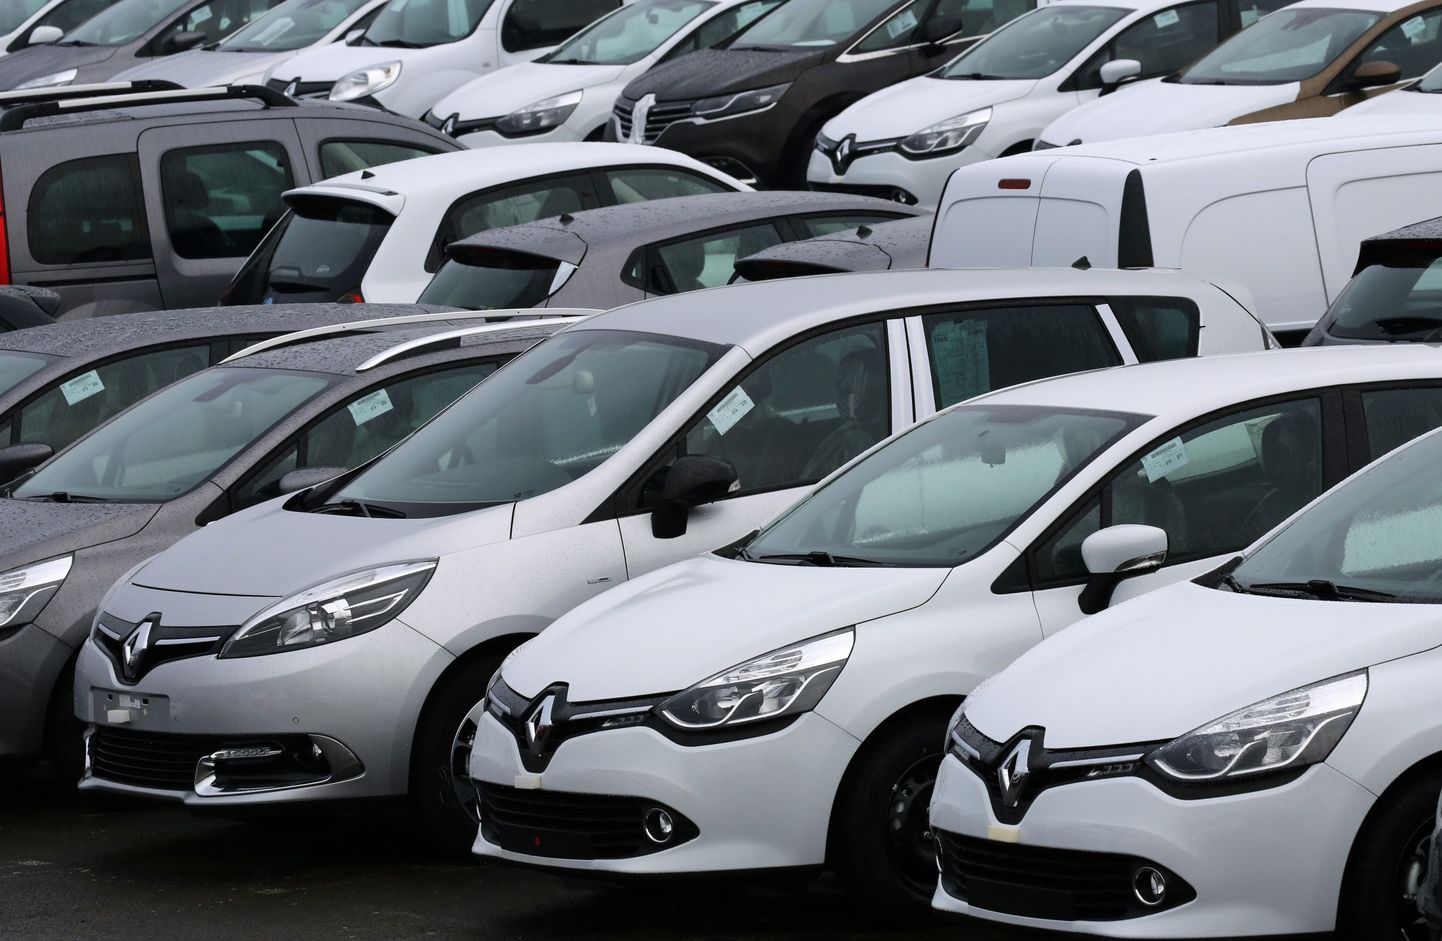 Uute Renault' sõiduautode rivi Flinsi tehase parkimisplatsil Prantsusmaal.